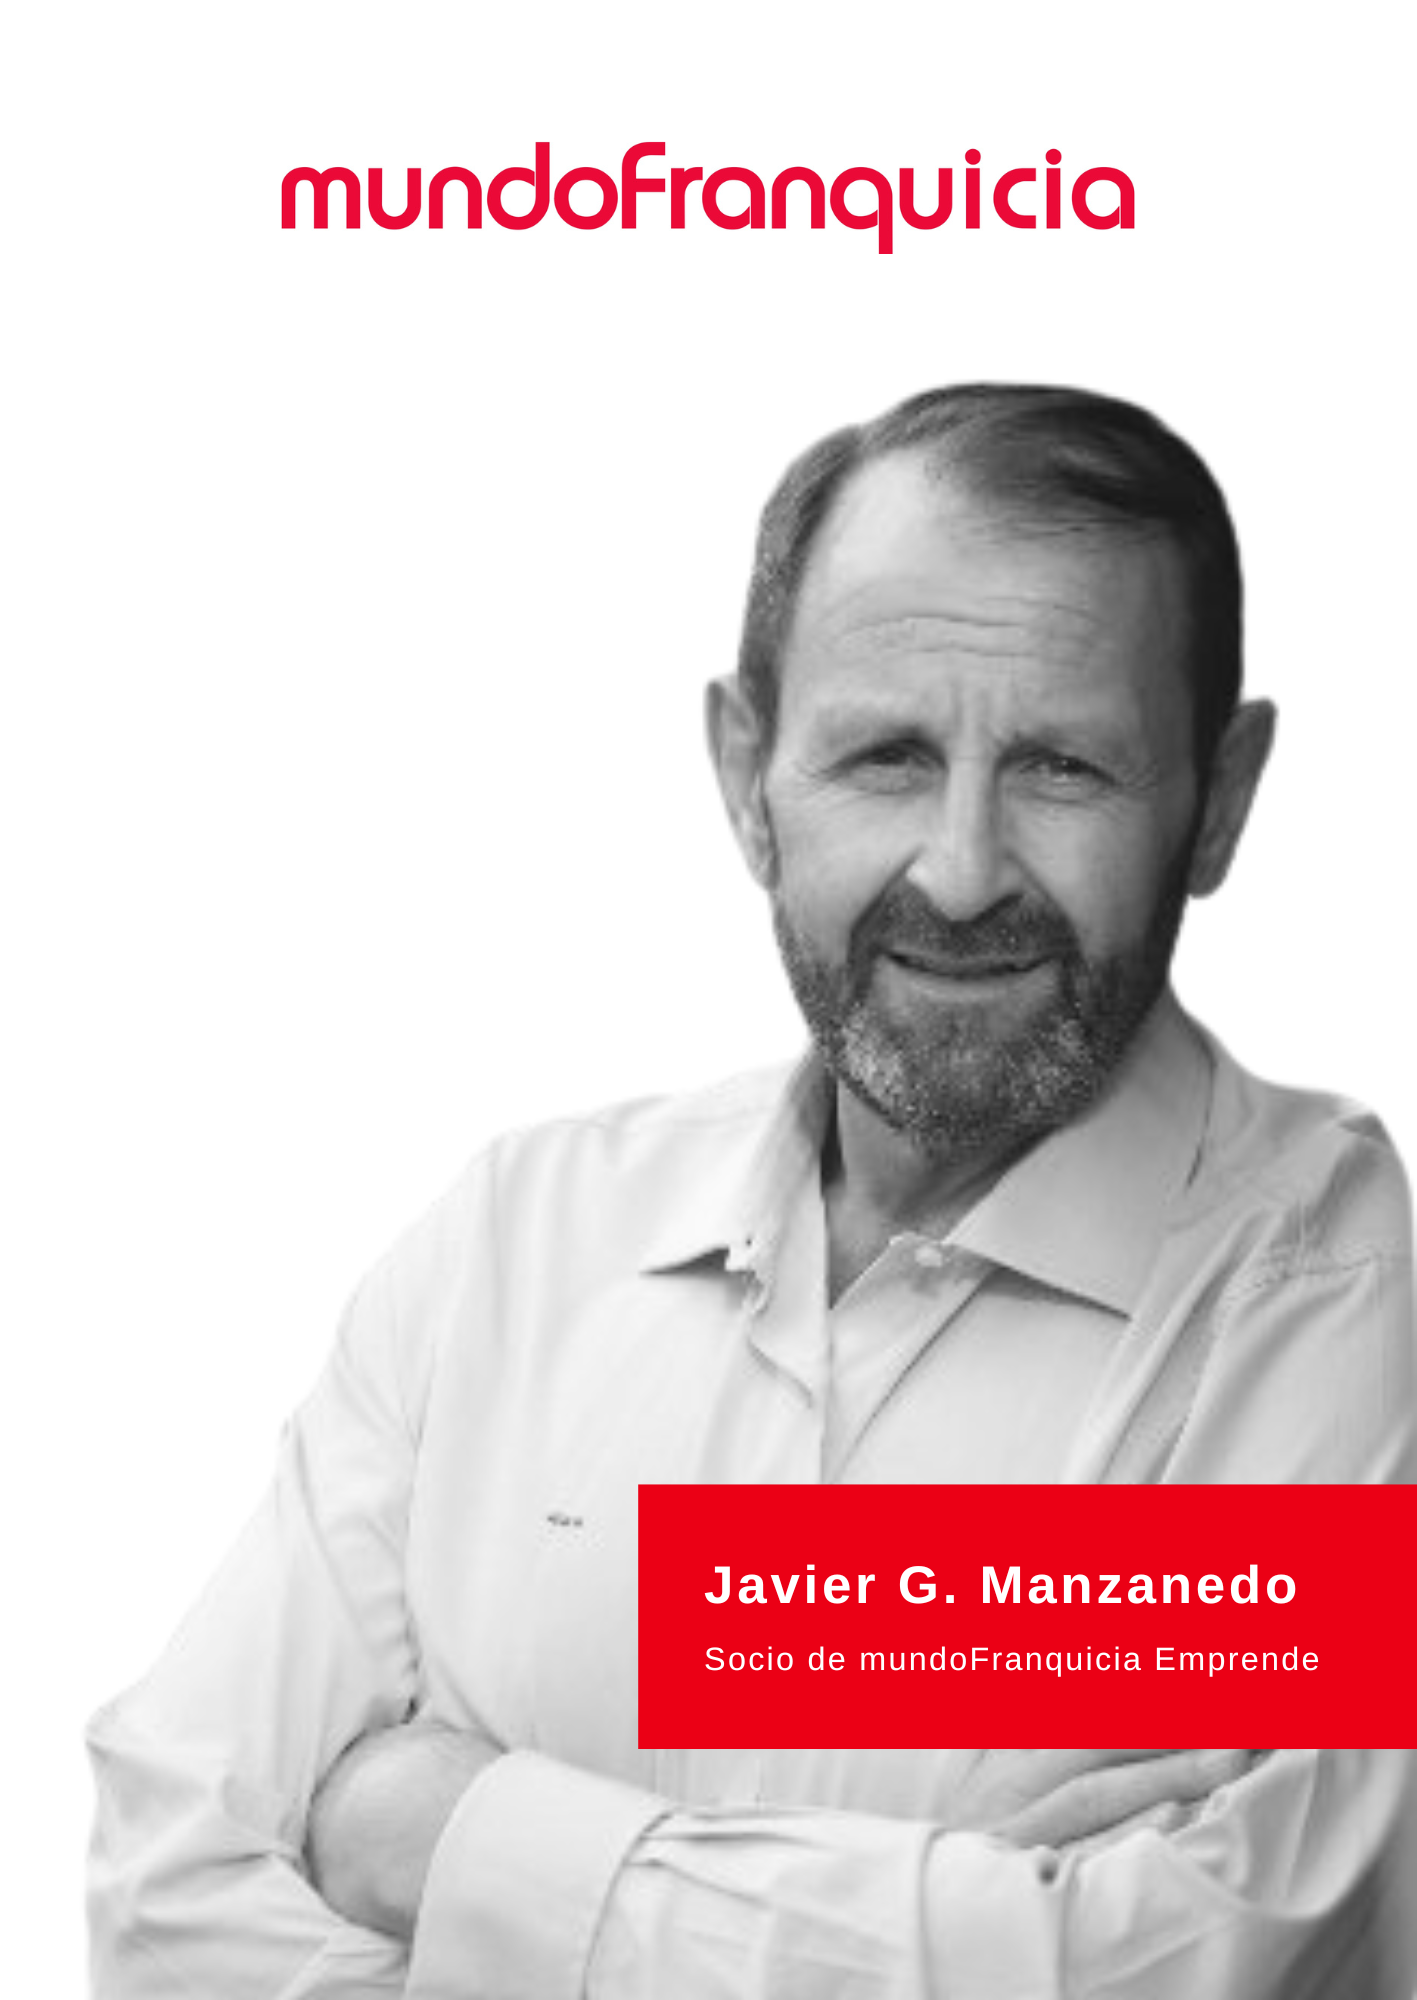 Javier García Manzanedo